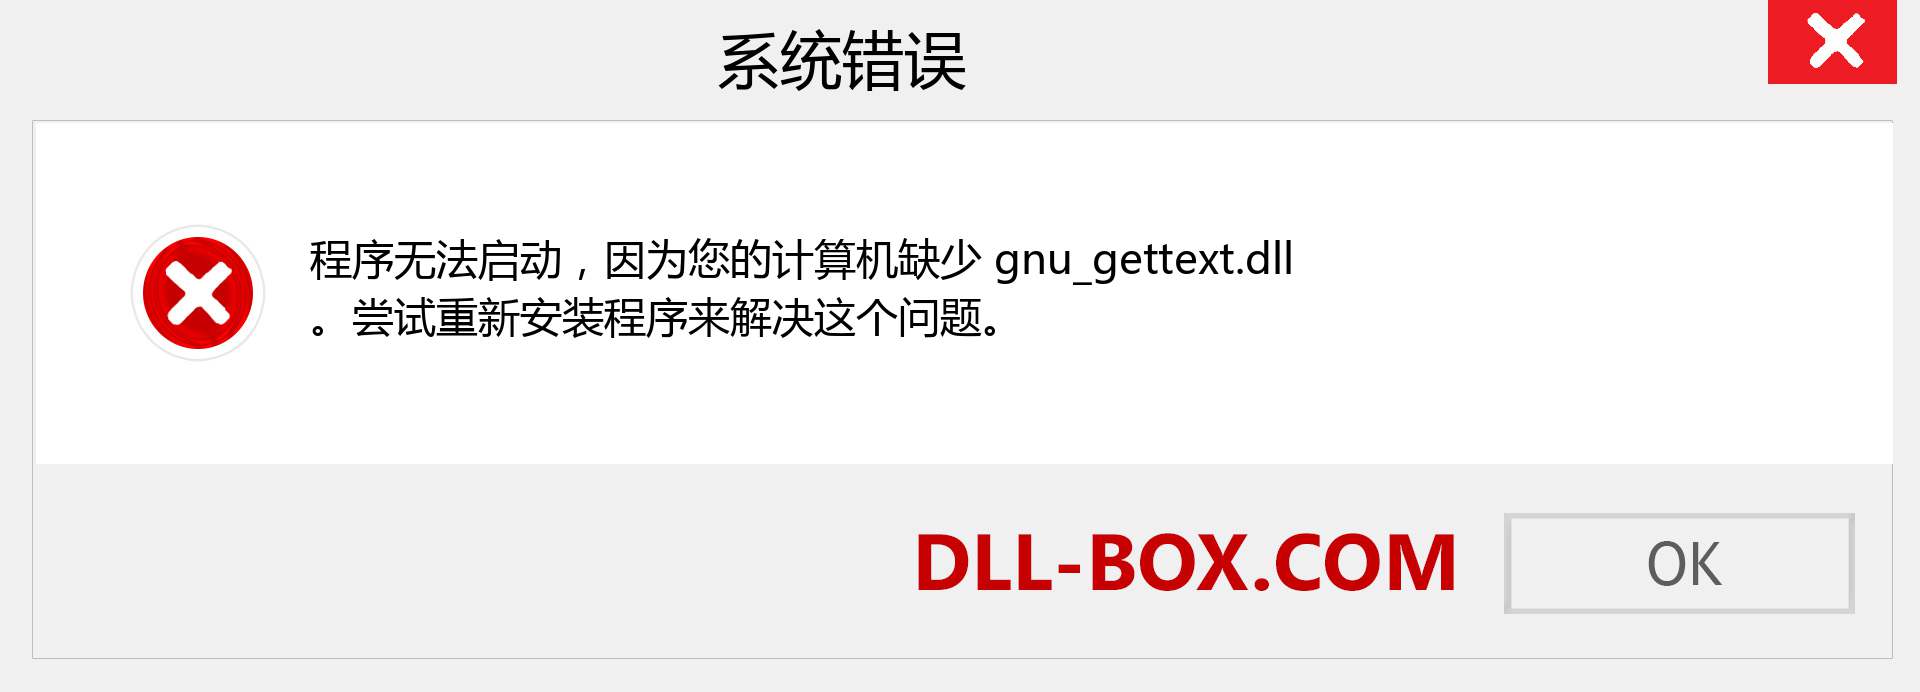 gnu_gettext.dll 文件丢失？。 适用于 Windows 7、8、10 的下载 - 修复 Windows、照片、图像上的 gnu_gettext dll 丢失错误